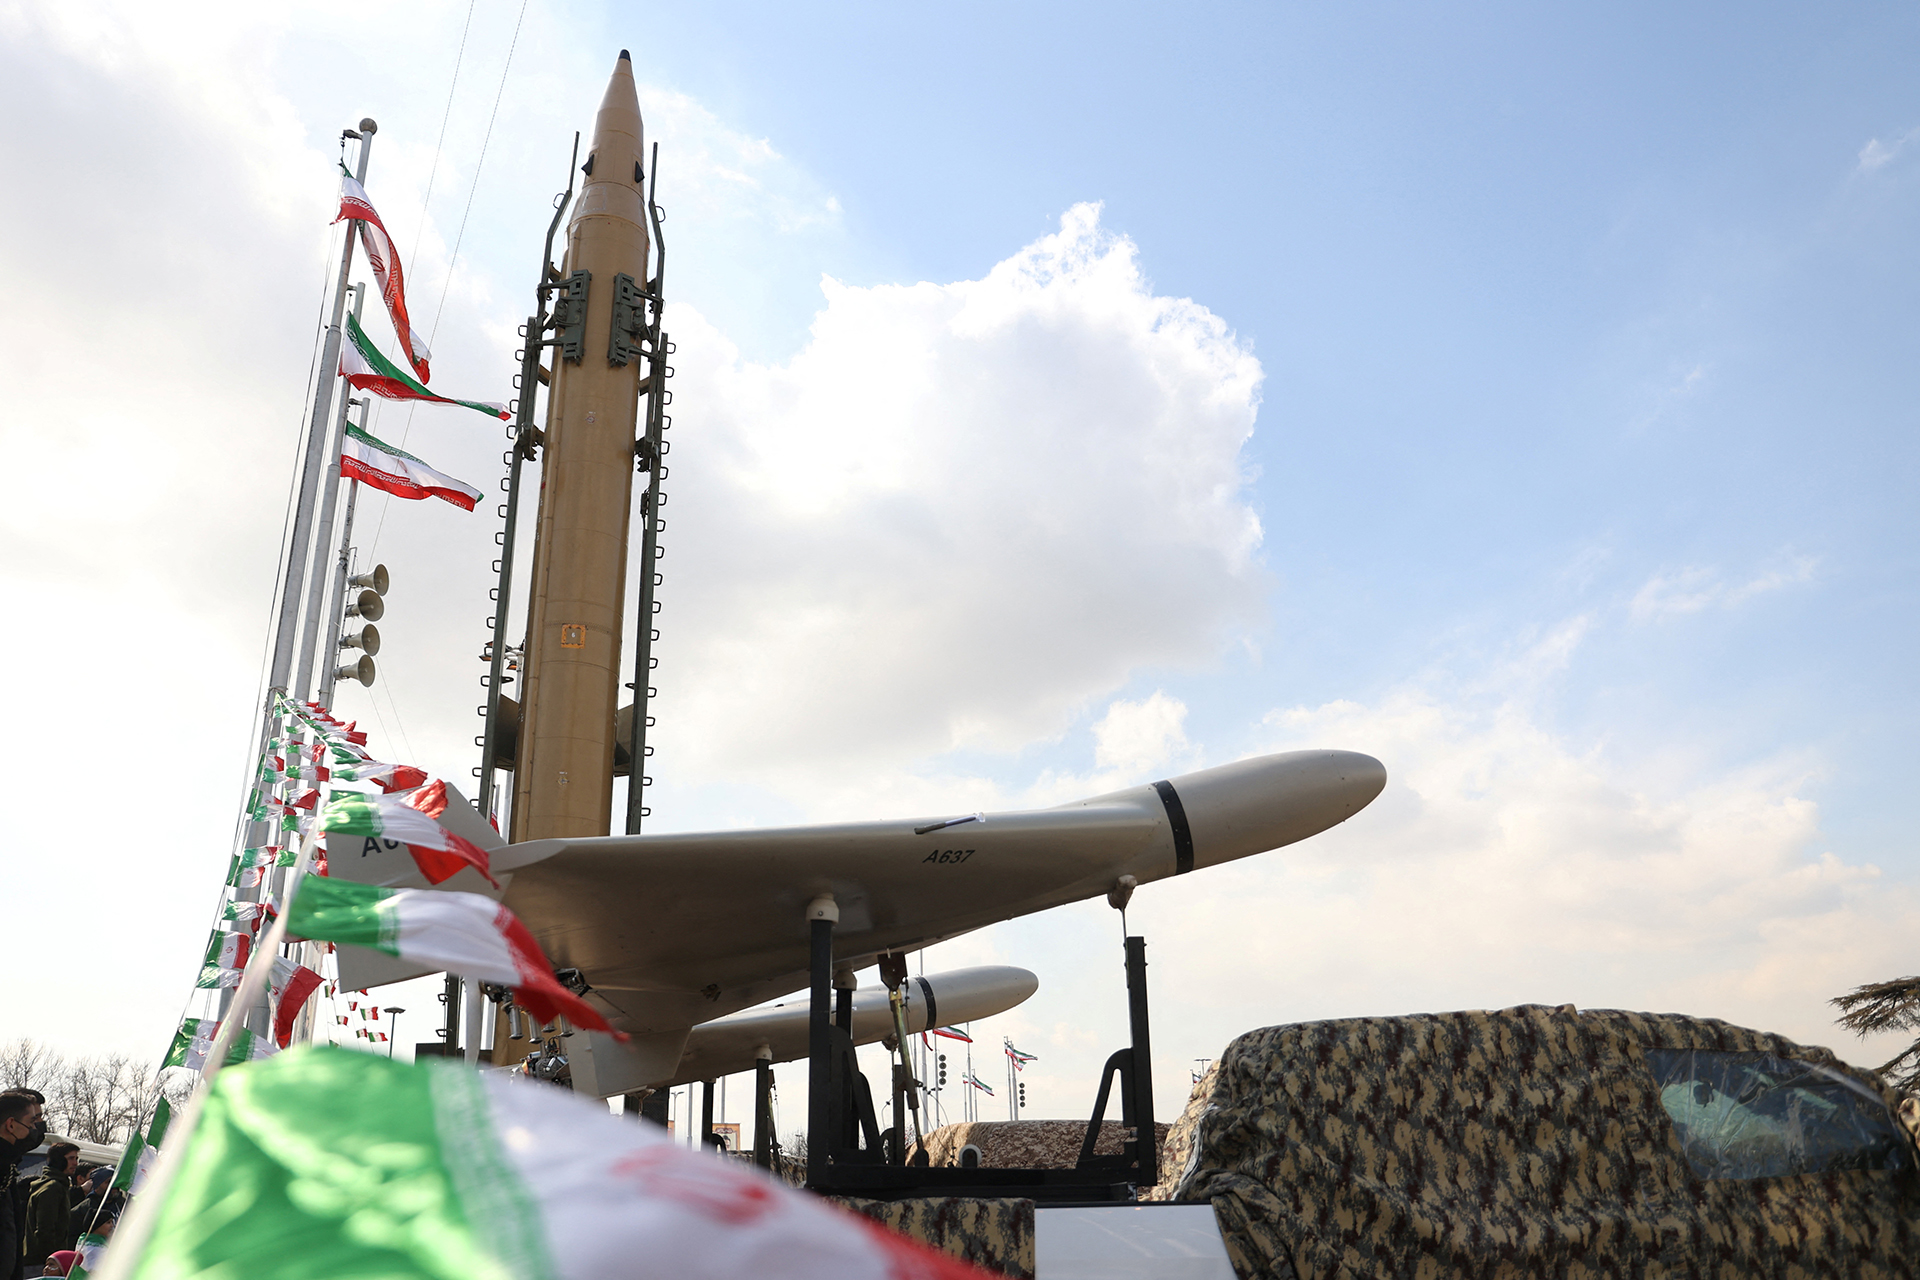 إسرائيل تعلن أن إيران بدأت الهجوم بعشرات المسيرات | أخبار – البوكس نيوز